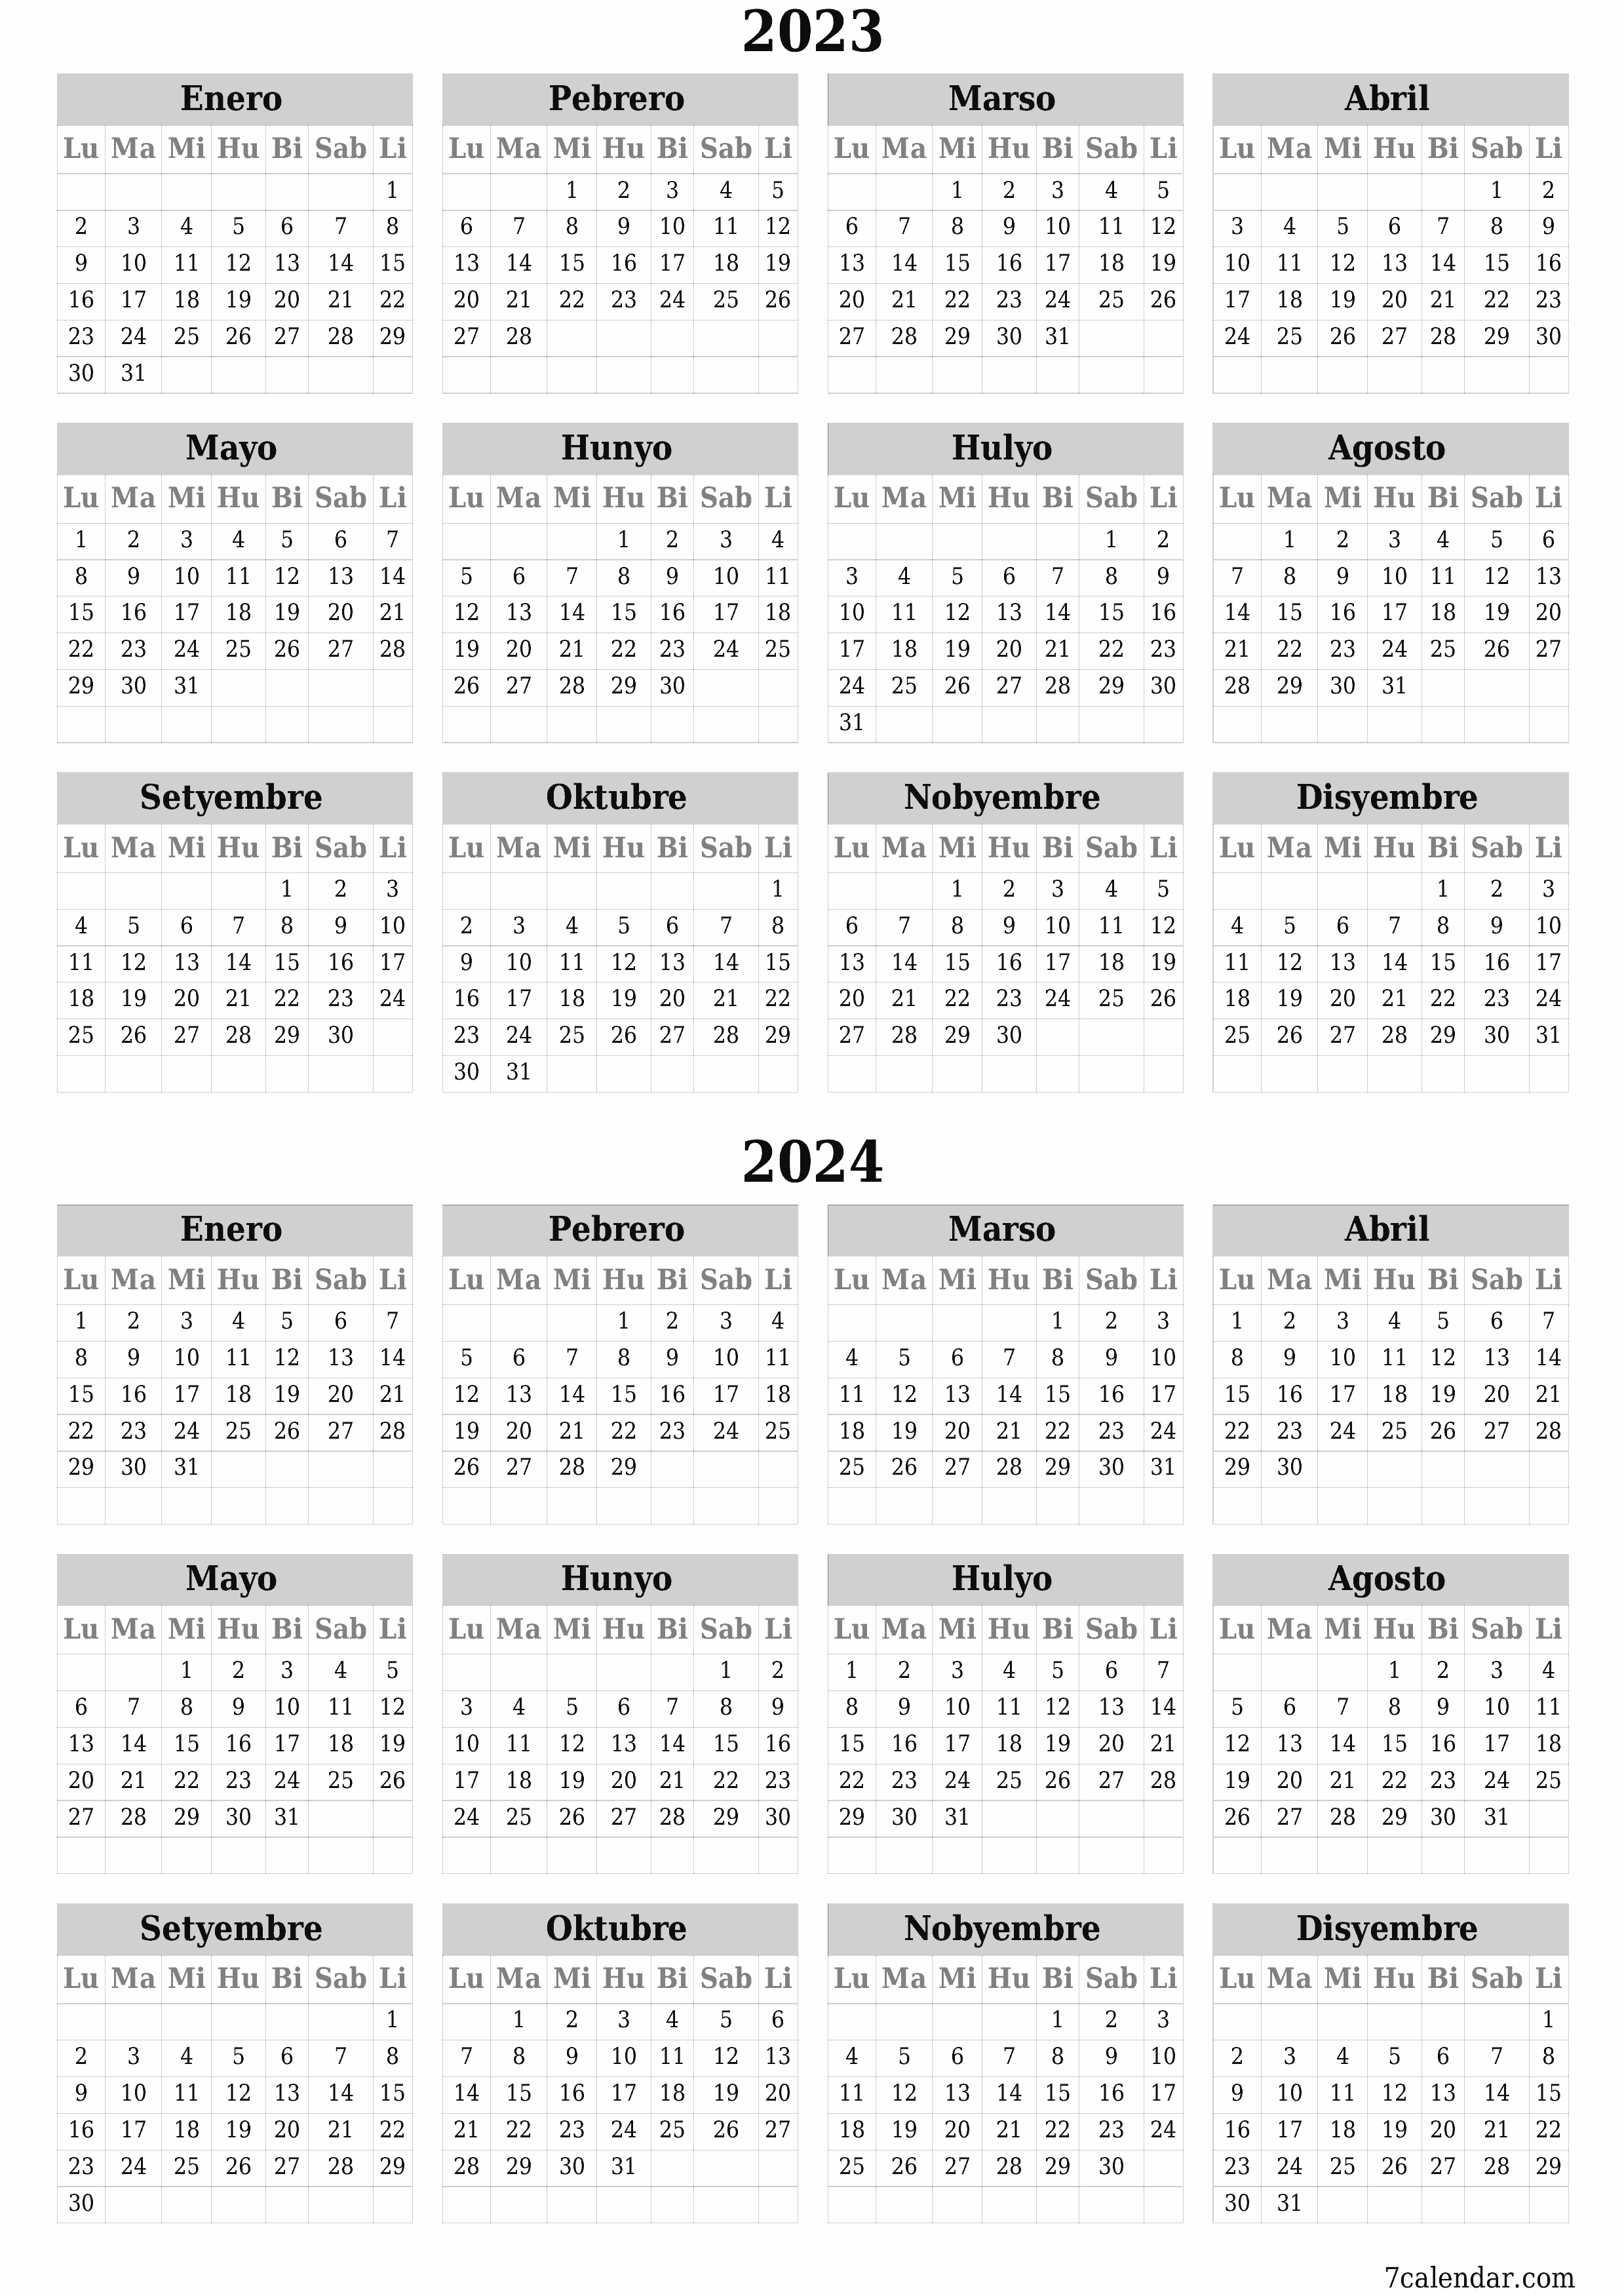 napi-print na sa dingding template ng libreng patayo Taunan kalendaryo Setyembre (Set) 2023